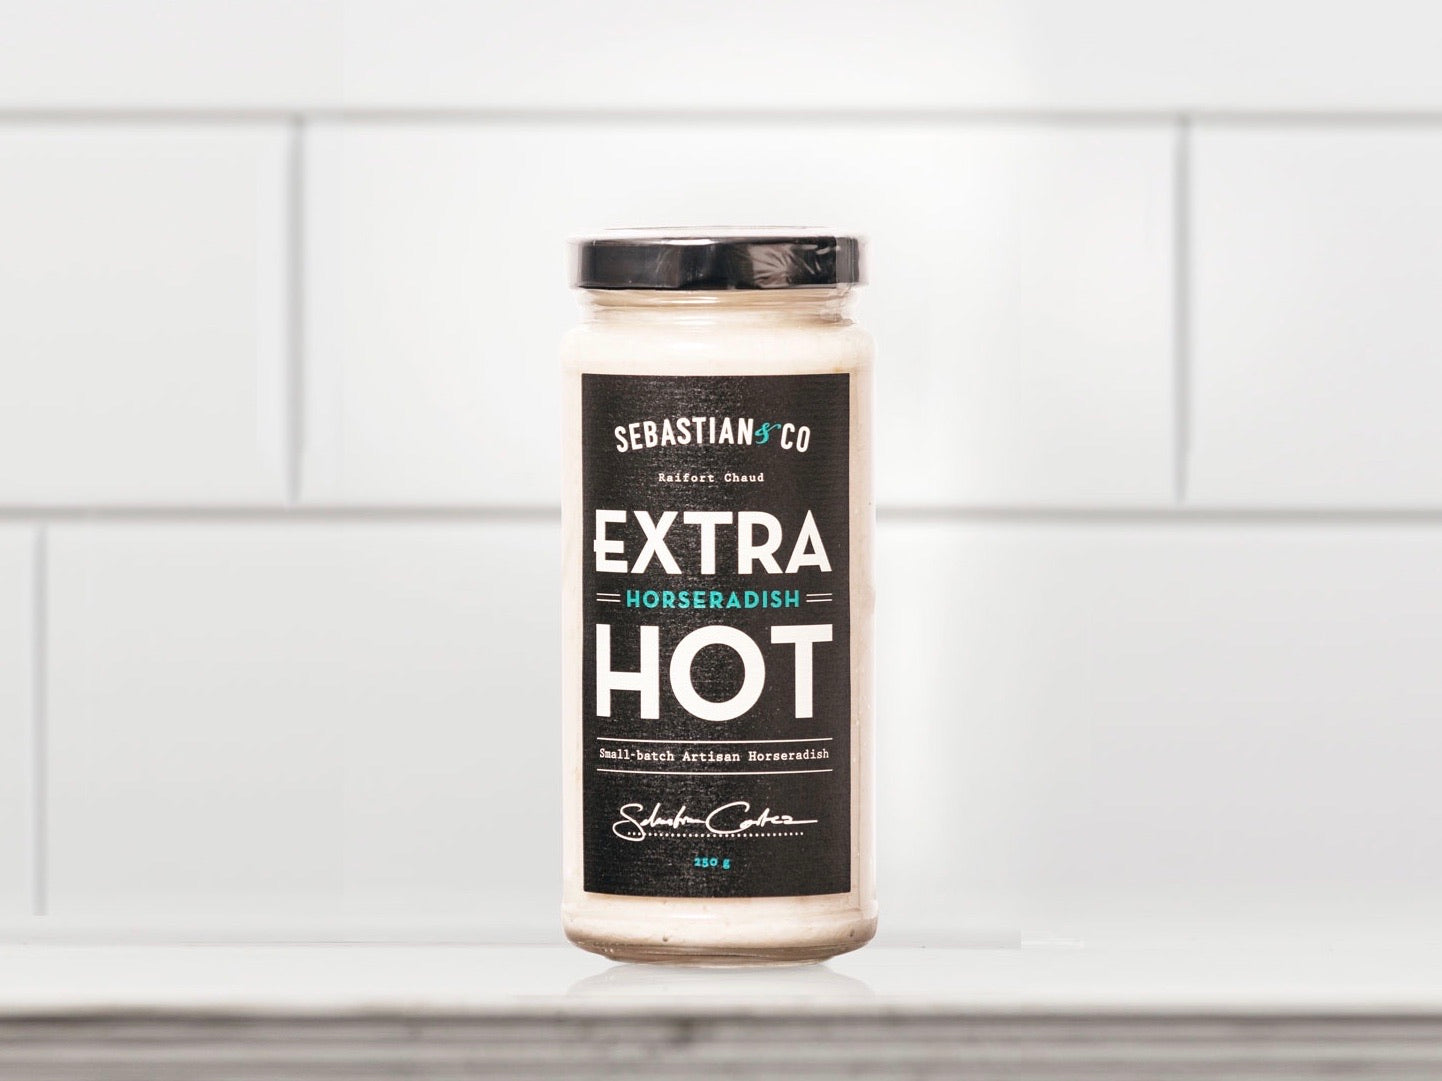 Sebastian & Co. Extra Hot Horseradish